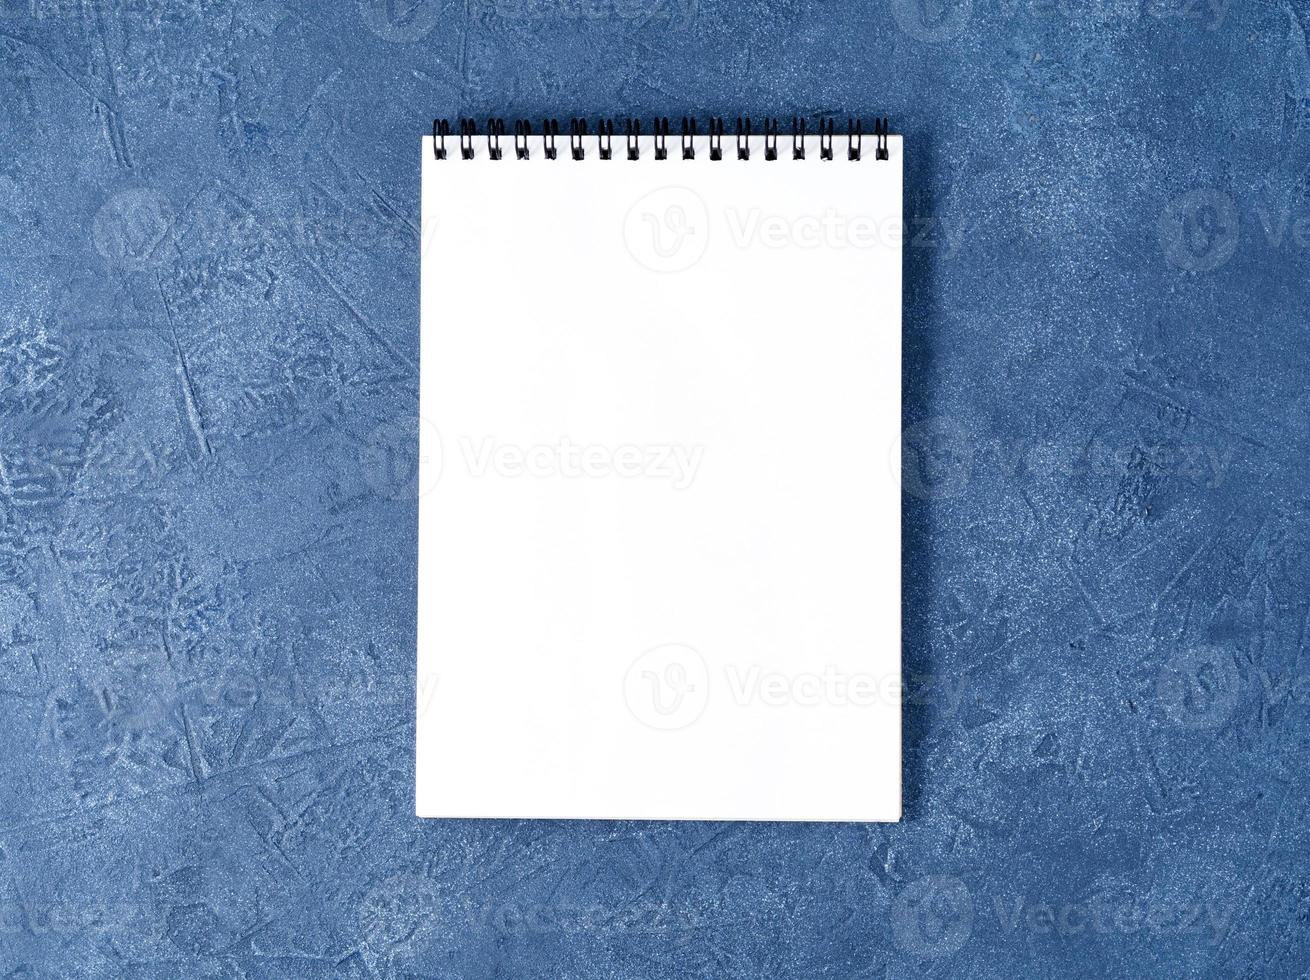 o bloco de notas aberto com página branca limpa na mesa de pedra azul escura envelhecida, vista superior foto